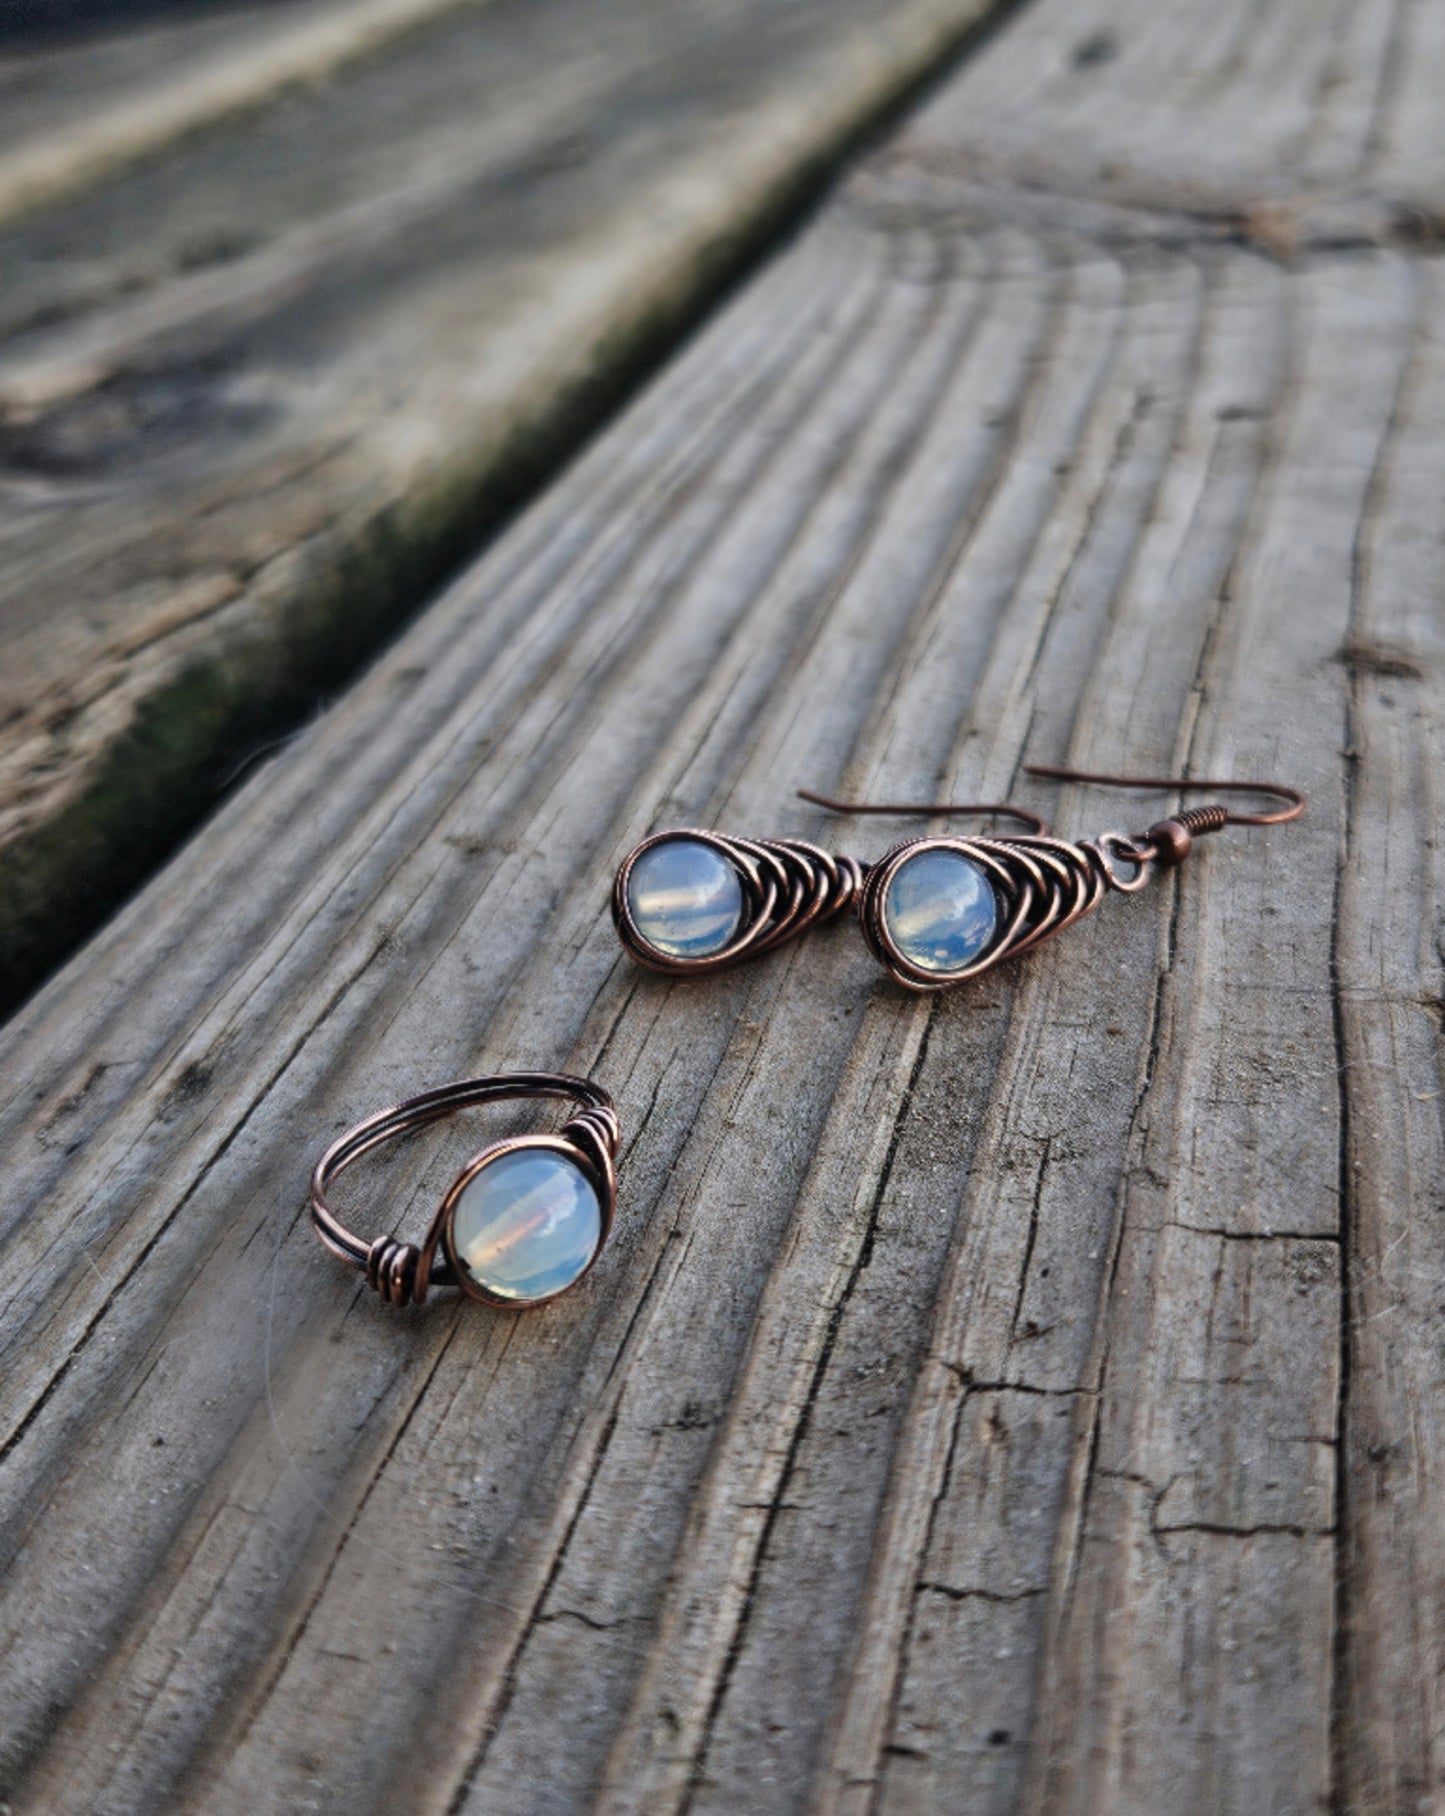 Opal earrings/ring